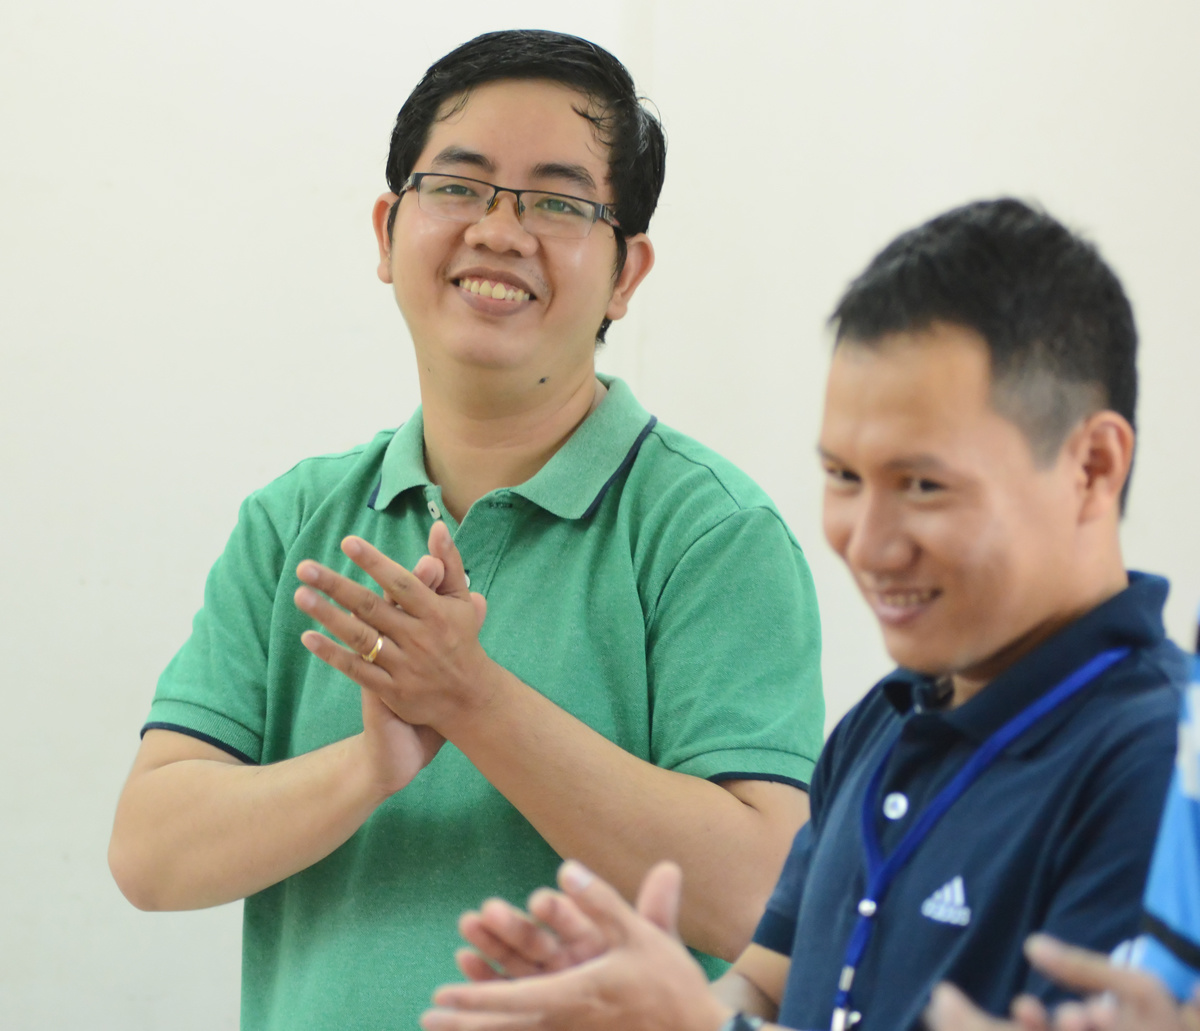 <p> Anh Vũ Minh Quang (bên trái) - đại diện cho mentor - đọc bản tuyên thệ: "Học viên cần, chúng tôi có. Học viên hỏi khó, chúng tôi mừng. Nhiệt huyết chân thành xây nghiệp lớn. Cùng bay lên mây hồng Việt Nam".</p>